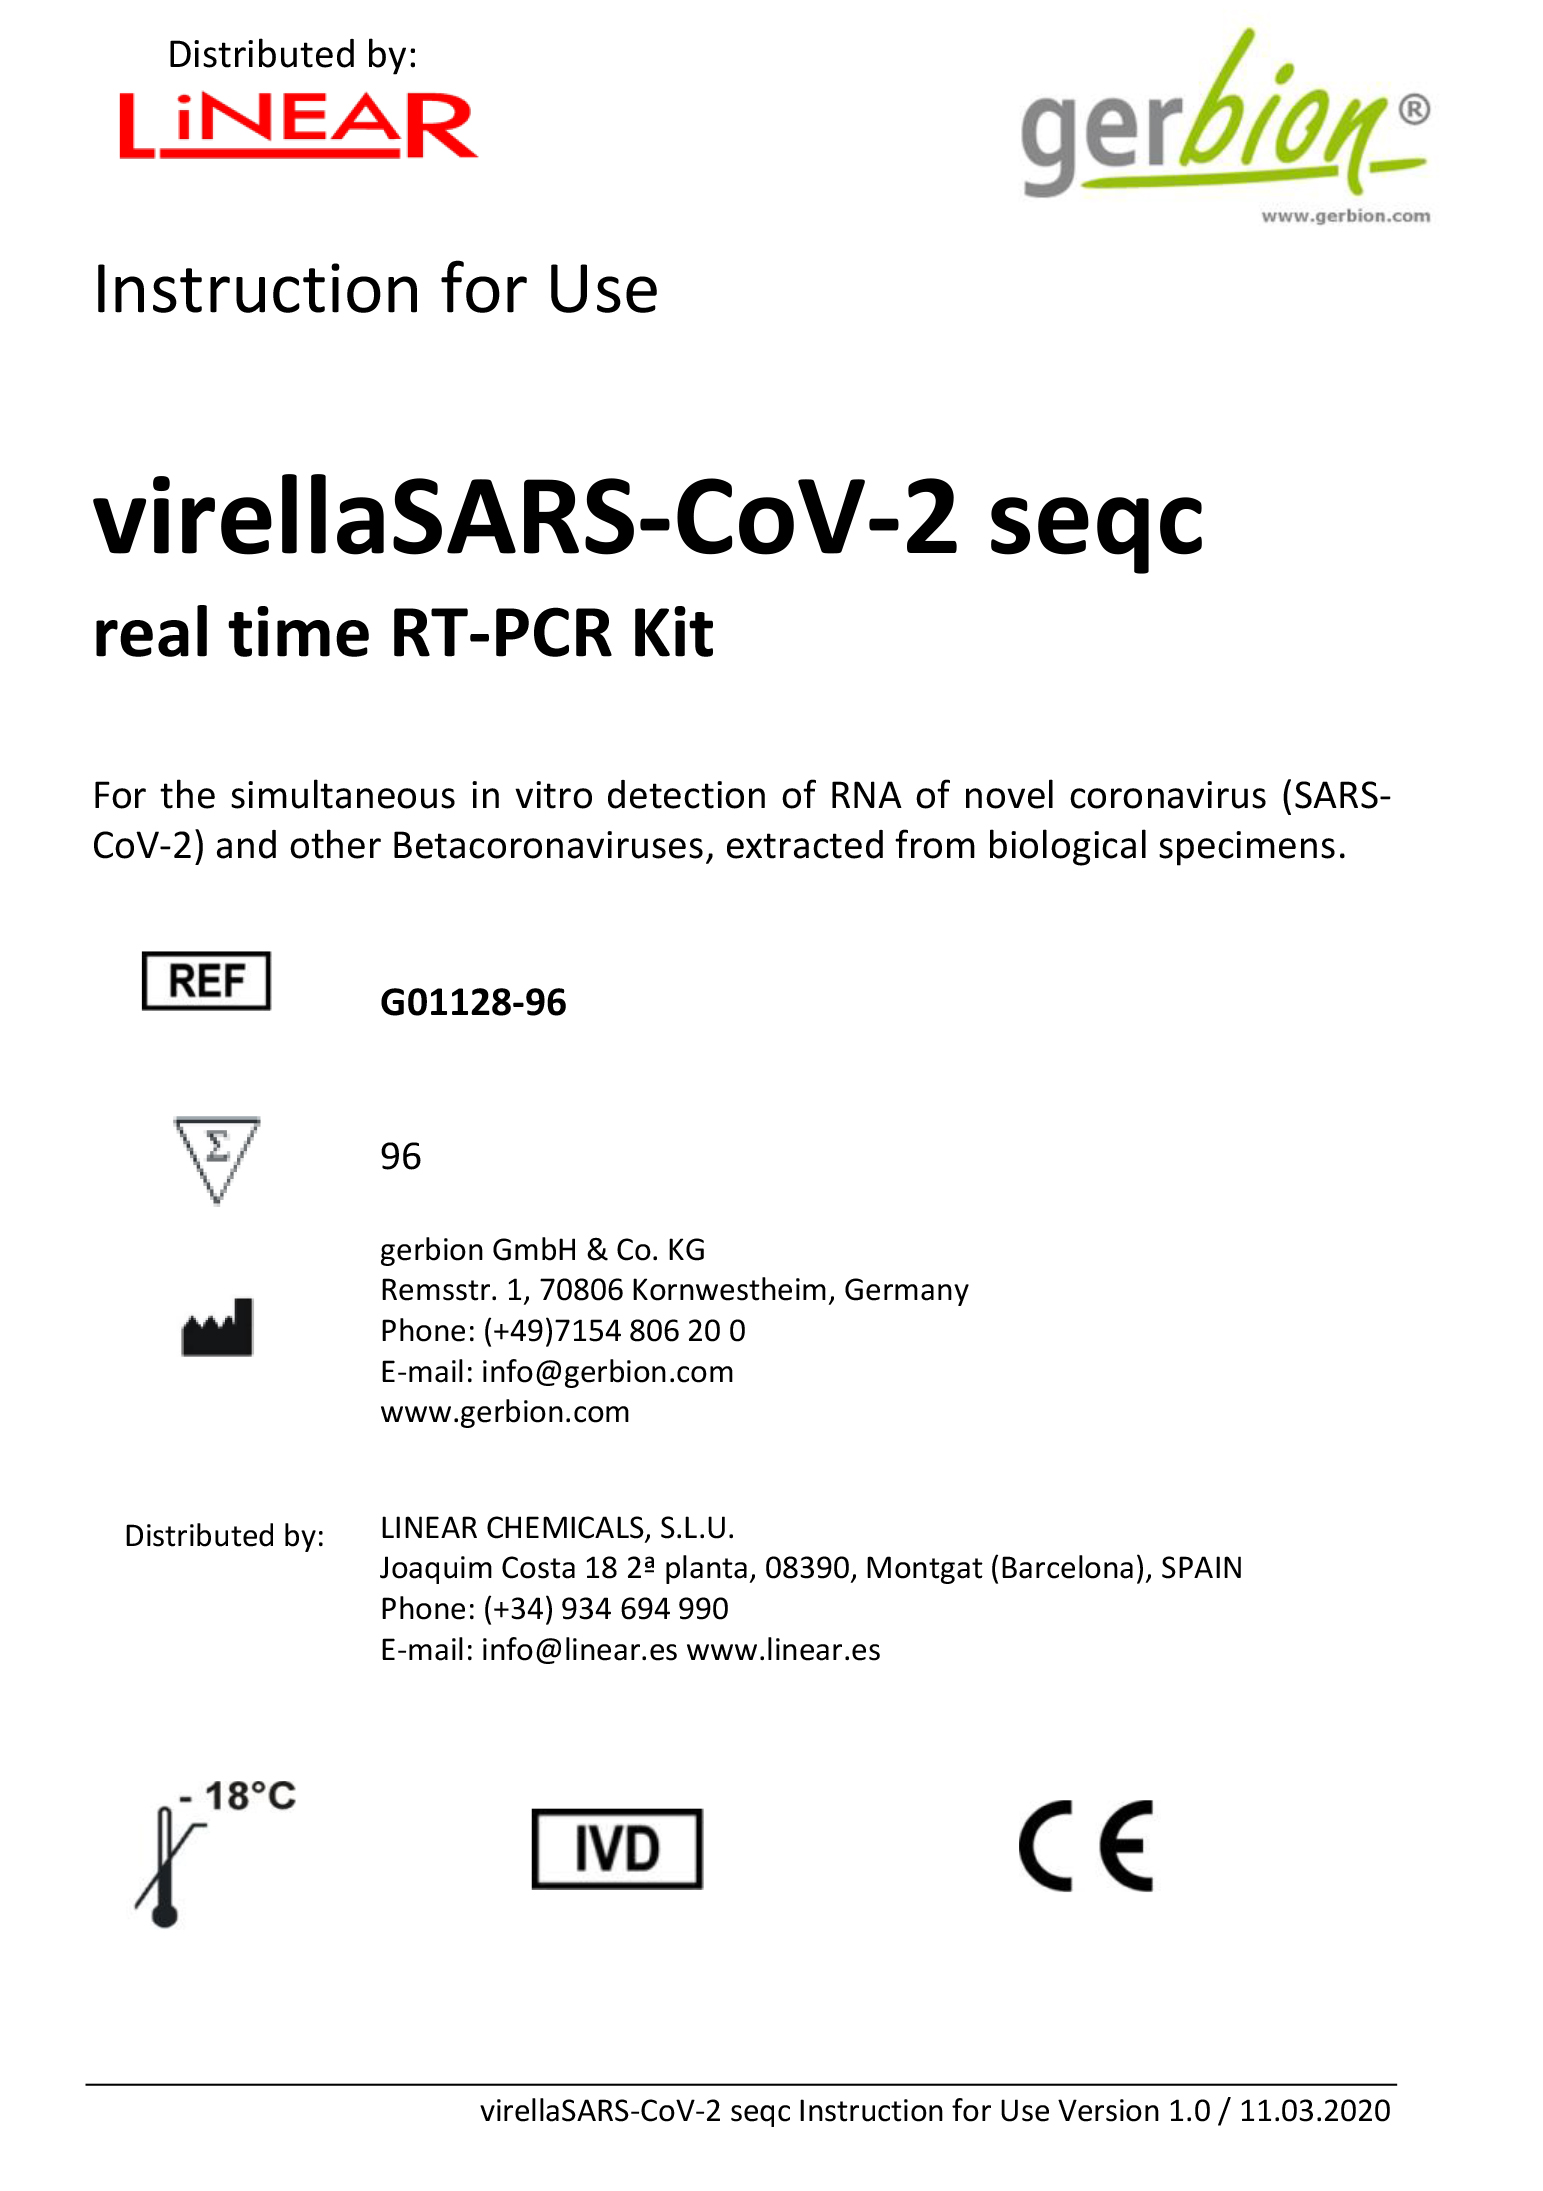 virellaSARS-CoV-2 seqc